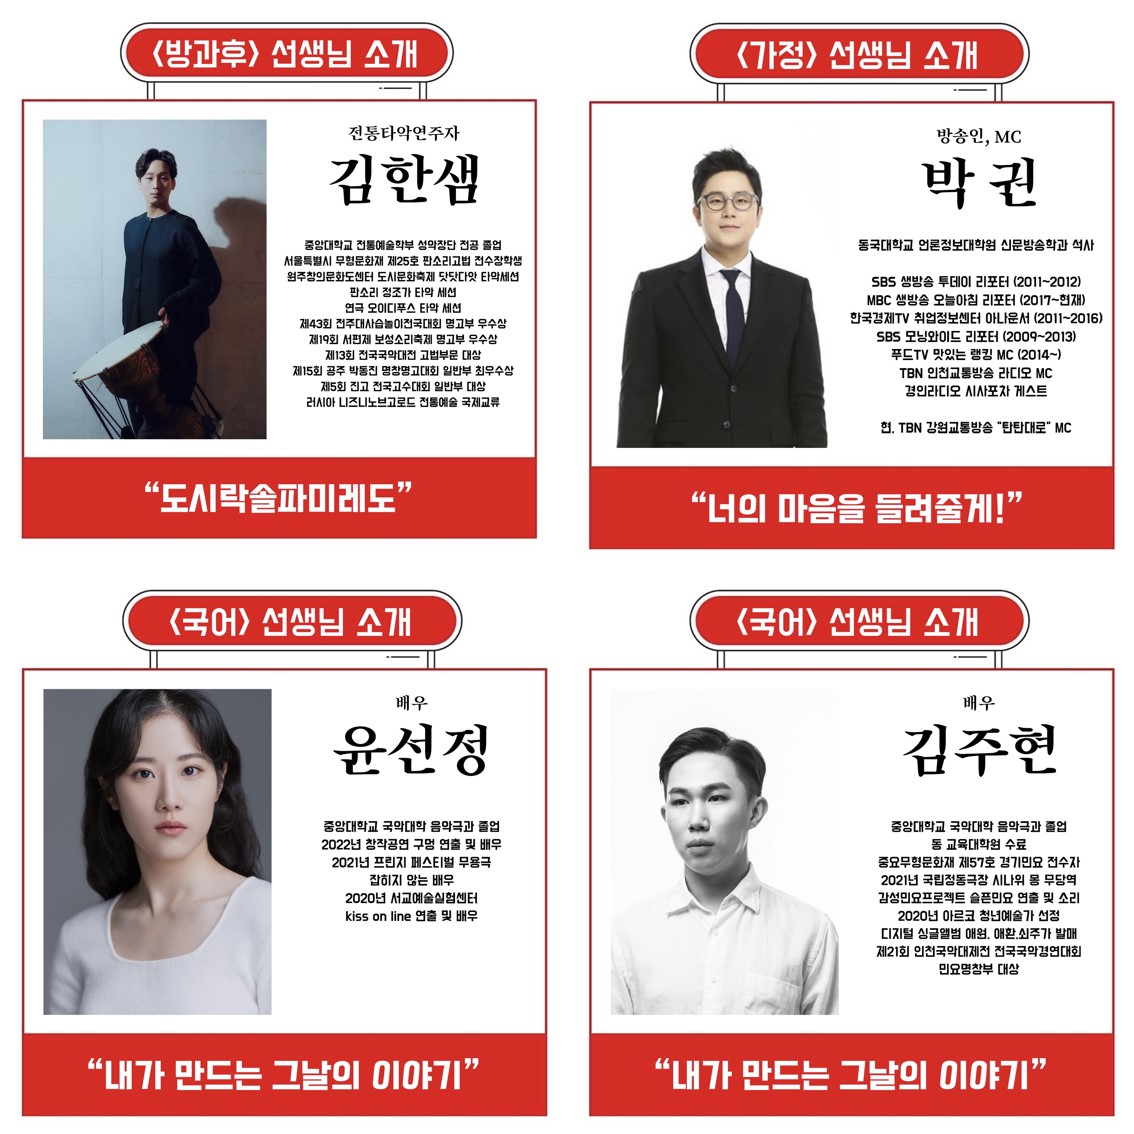 진달래홀 세컨드타임테이블 '도시예술프로젝트' 아티스트 소개